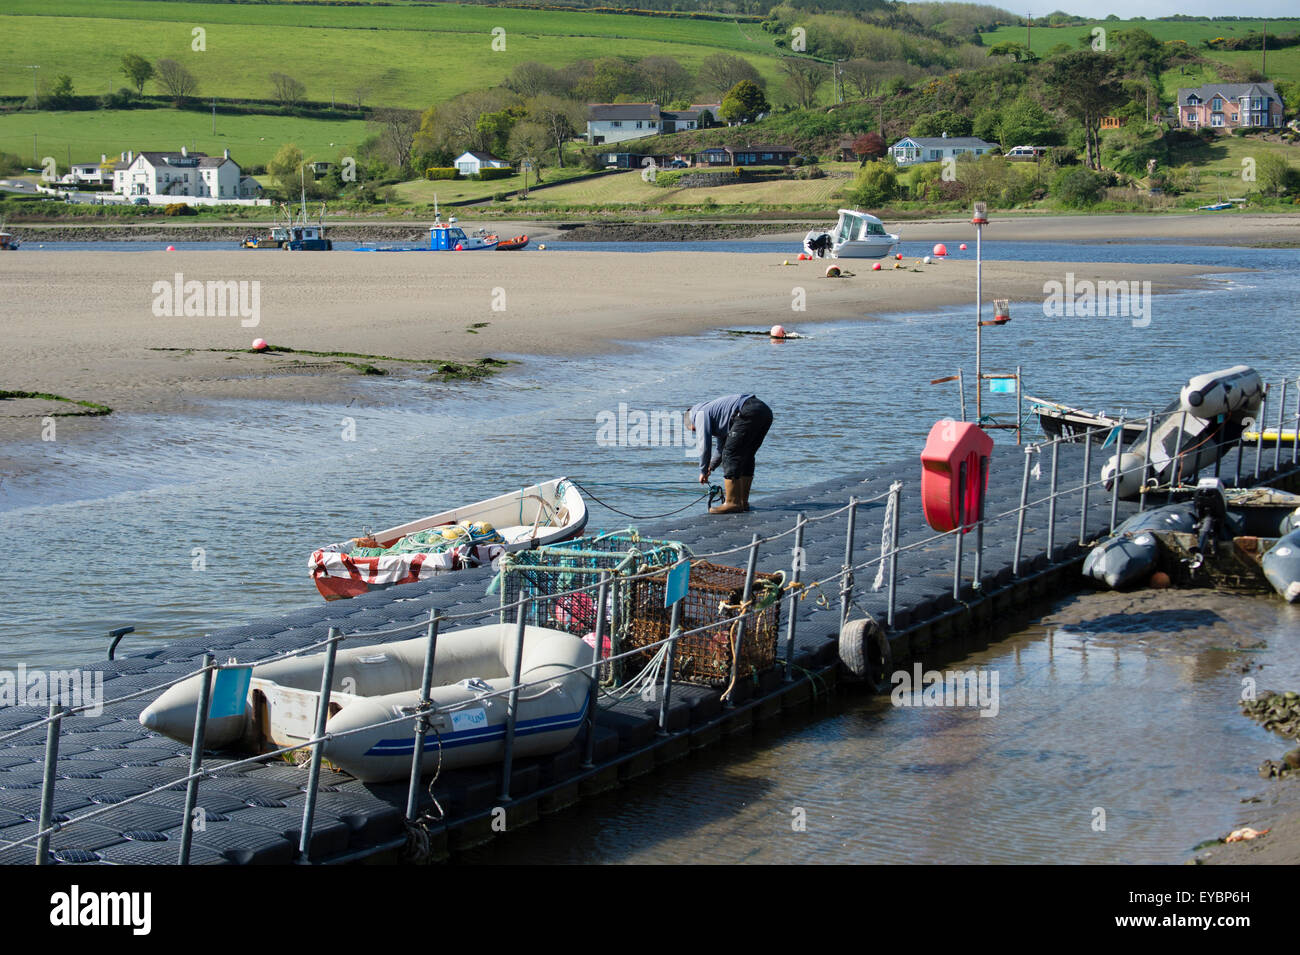 Un pêcheur debout sur le ponton d'amarrage à Gwbert sur l'estuaire de la rivière Teifi Tivy Ceredigion, pays de Galles UK Banque D'Images